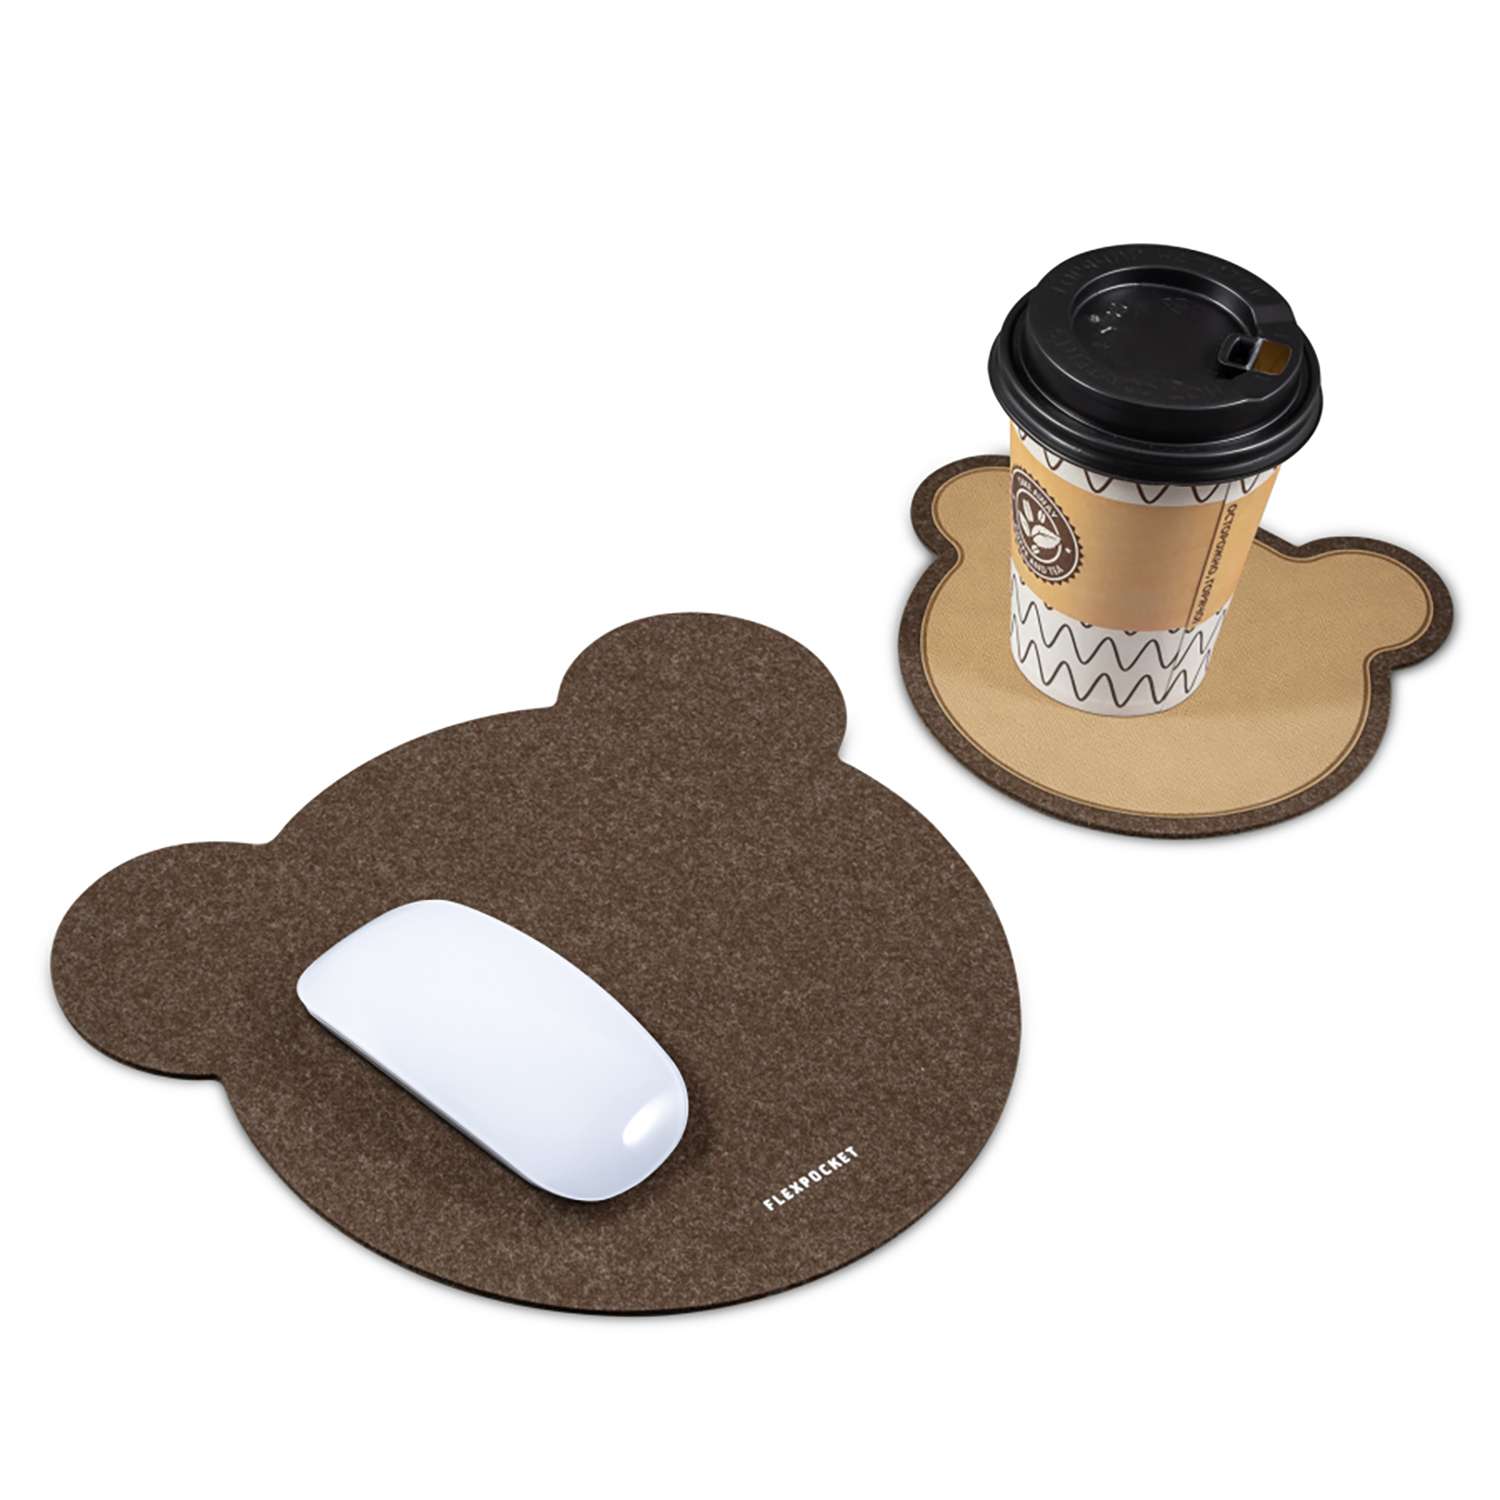 Настольный коврик Flexpocket для мыши в виде медведя с подставкой под кружку коричневый - фото 2